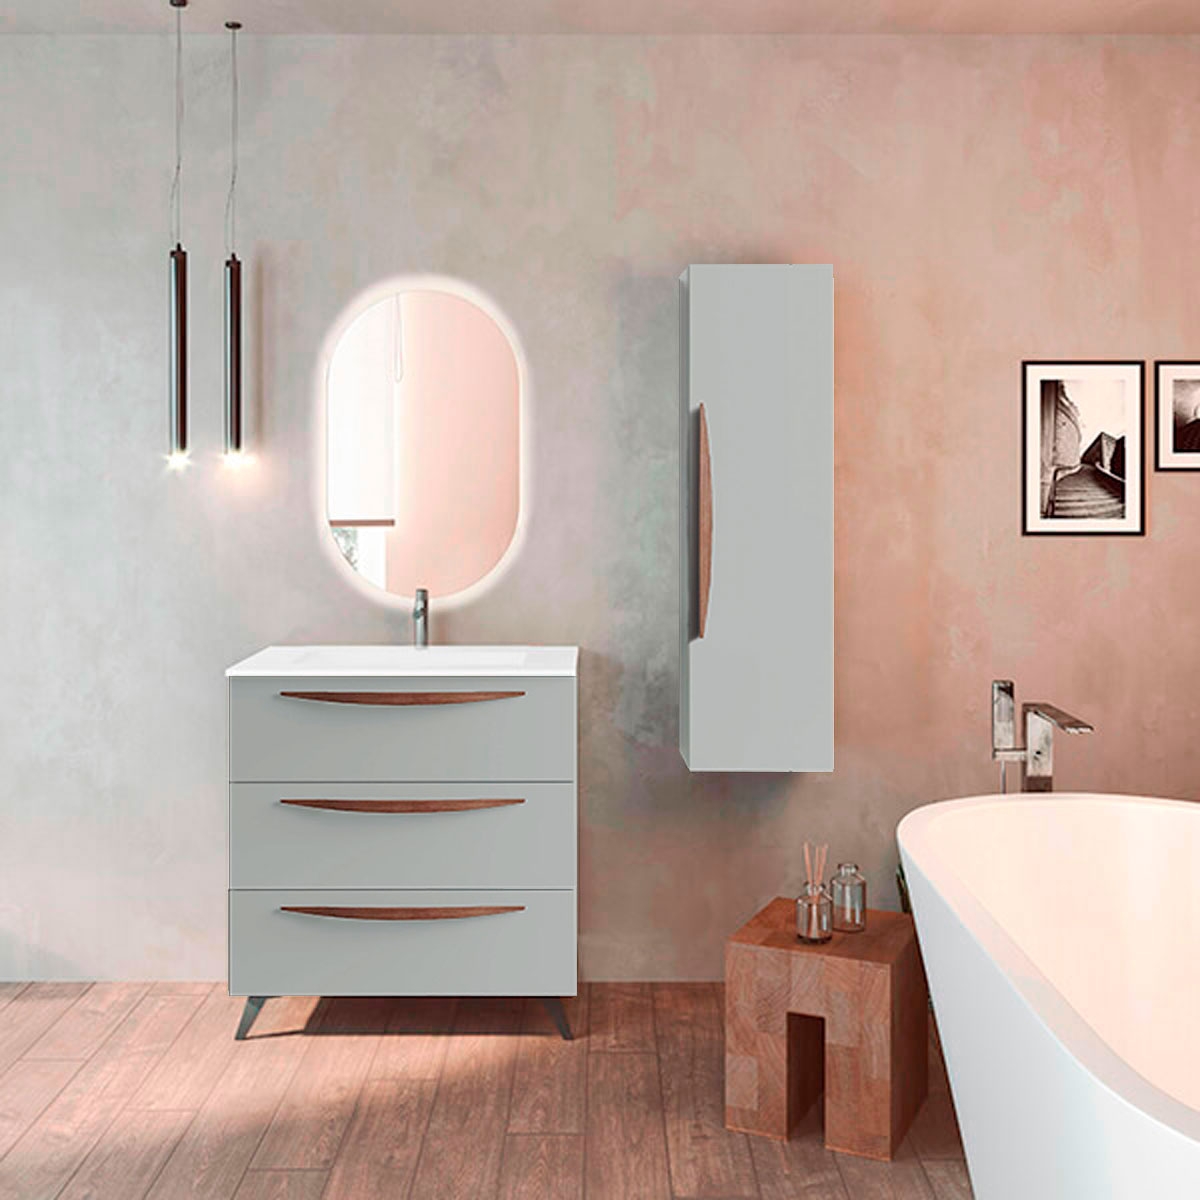 https://www.paratureforma.com/68178-product_default/mueble-de-bano-con-patas-3-cajones-con-lavabo-color-griggio-modelo-arco.jpg